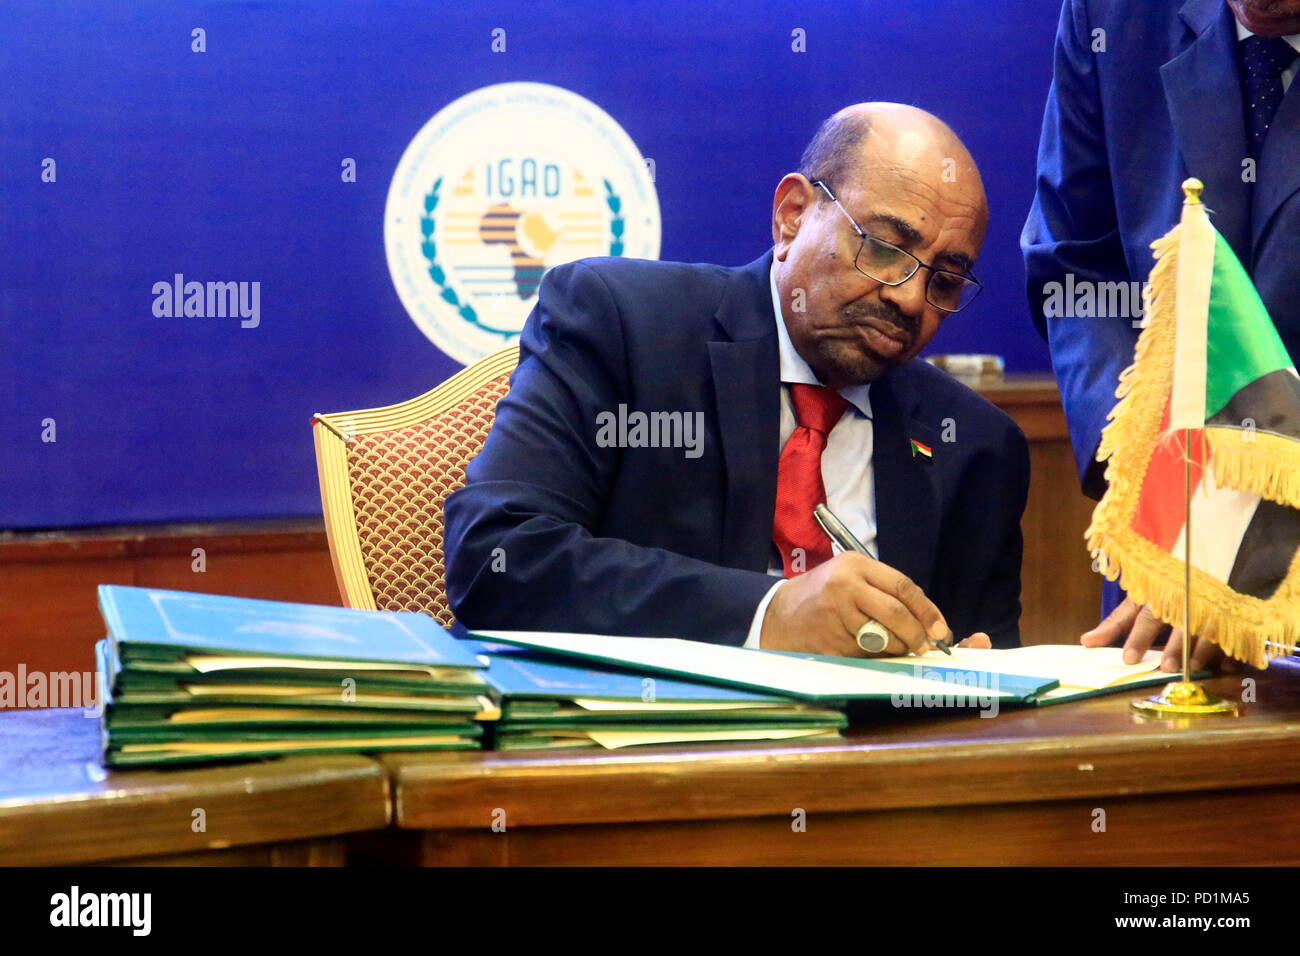 Khartoum, Soudan. 5 Août, 2018. Le président soudanais Omar el-Béchir signe en tant que garant de l'accord final sur le partage du pouvoir et les arrangements en matière de sécurité entre les parties en conflit au Soudan du Sud, à Khartoum, capitale du Soudan, le 5 août 2018. Les parties en conflit au Soudan du Sud ont signé dimanche un accord final dans la capitale soudanaise Khartoum sur le partage du pouvoir et les dispositions de sécurité. Credit : Mohamed Khidir/Xinhua/Alamy Live News Banque D'Images